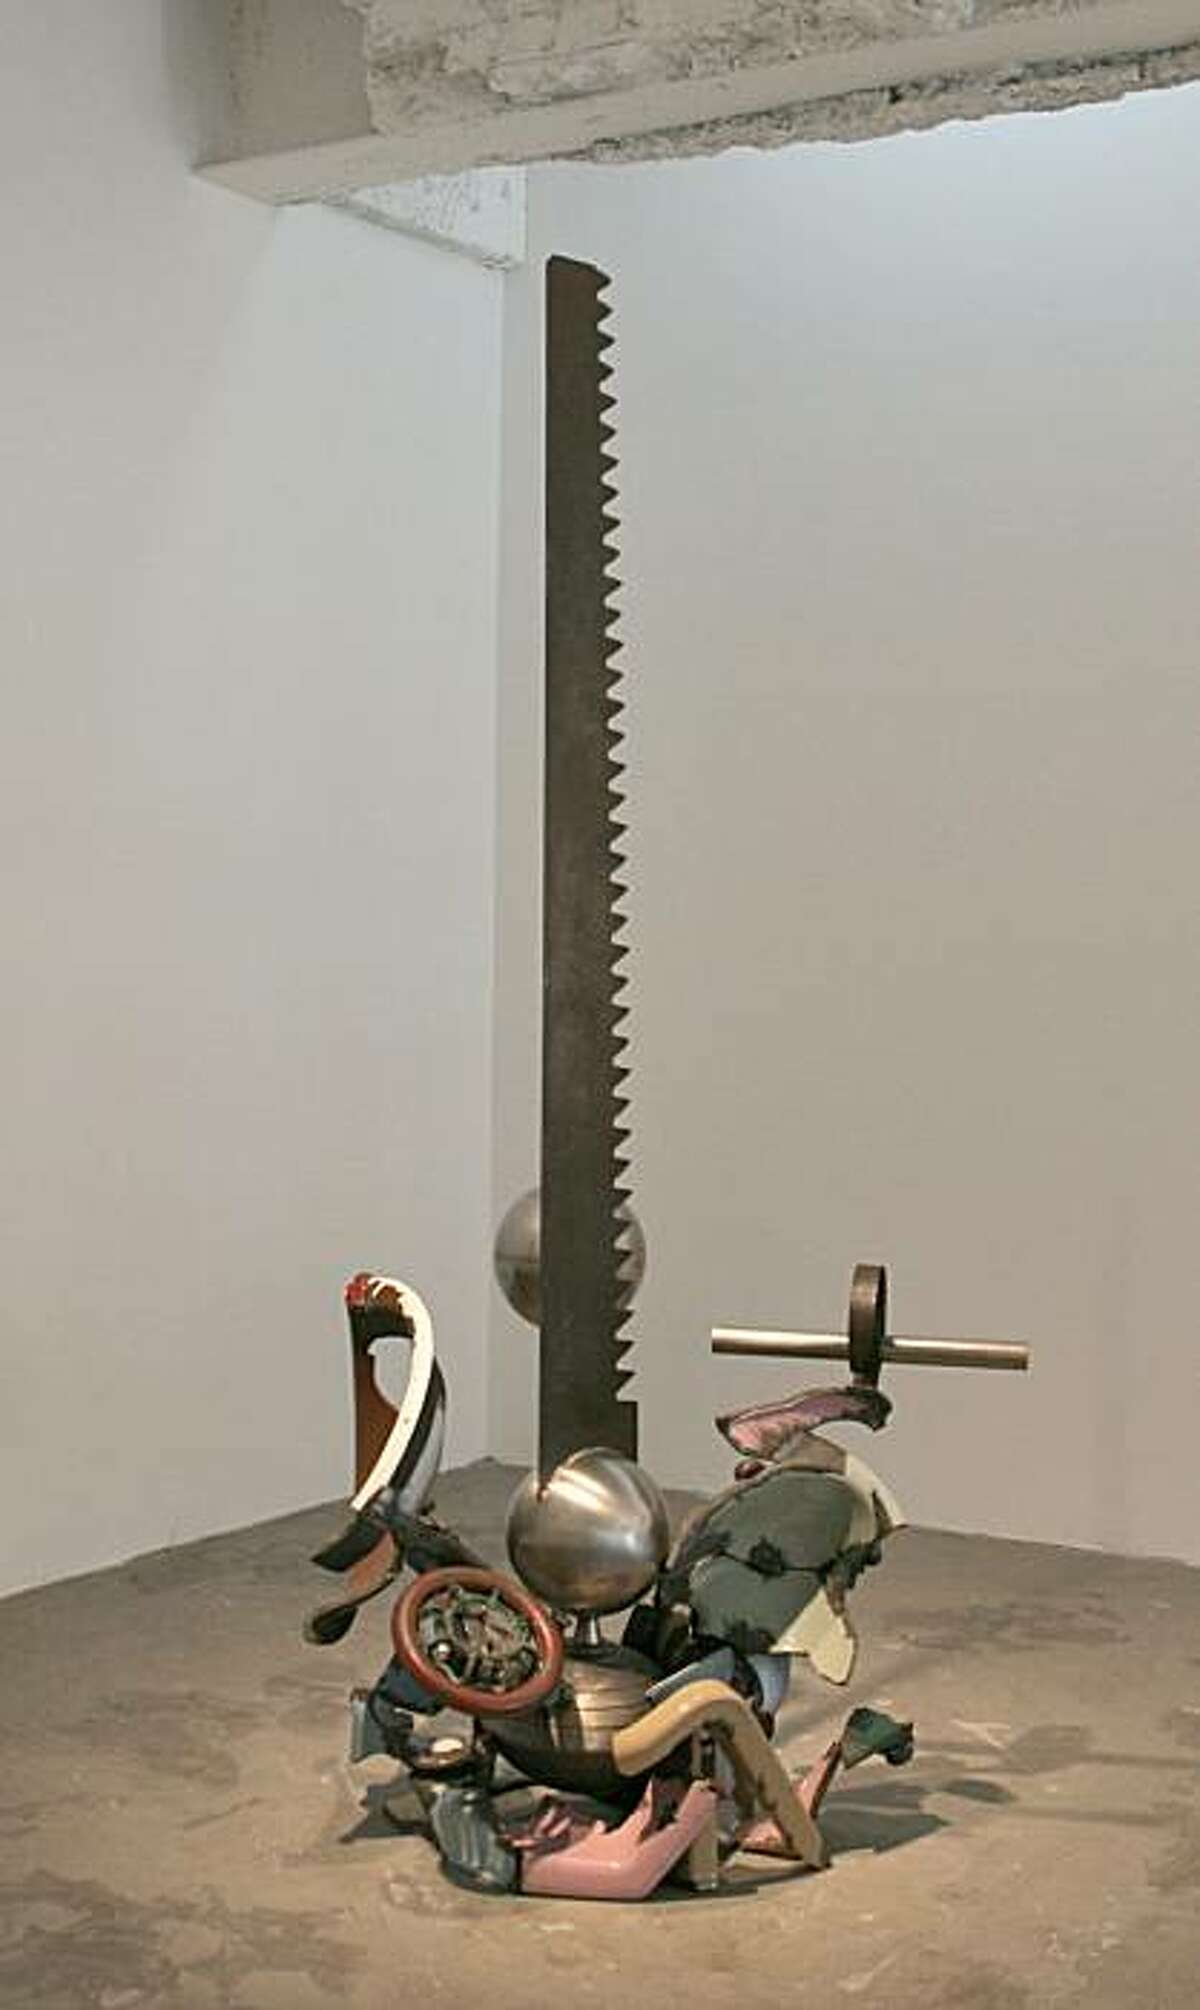 "Cross Cut" (2005) mixed media sculpture by Robert Hudson 77" x 34" x 24"